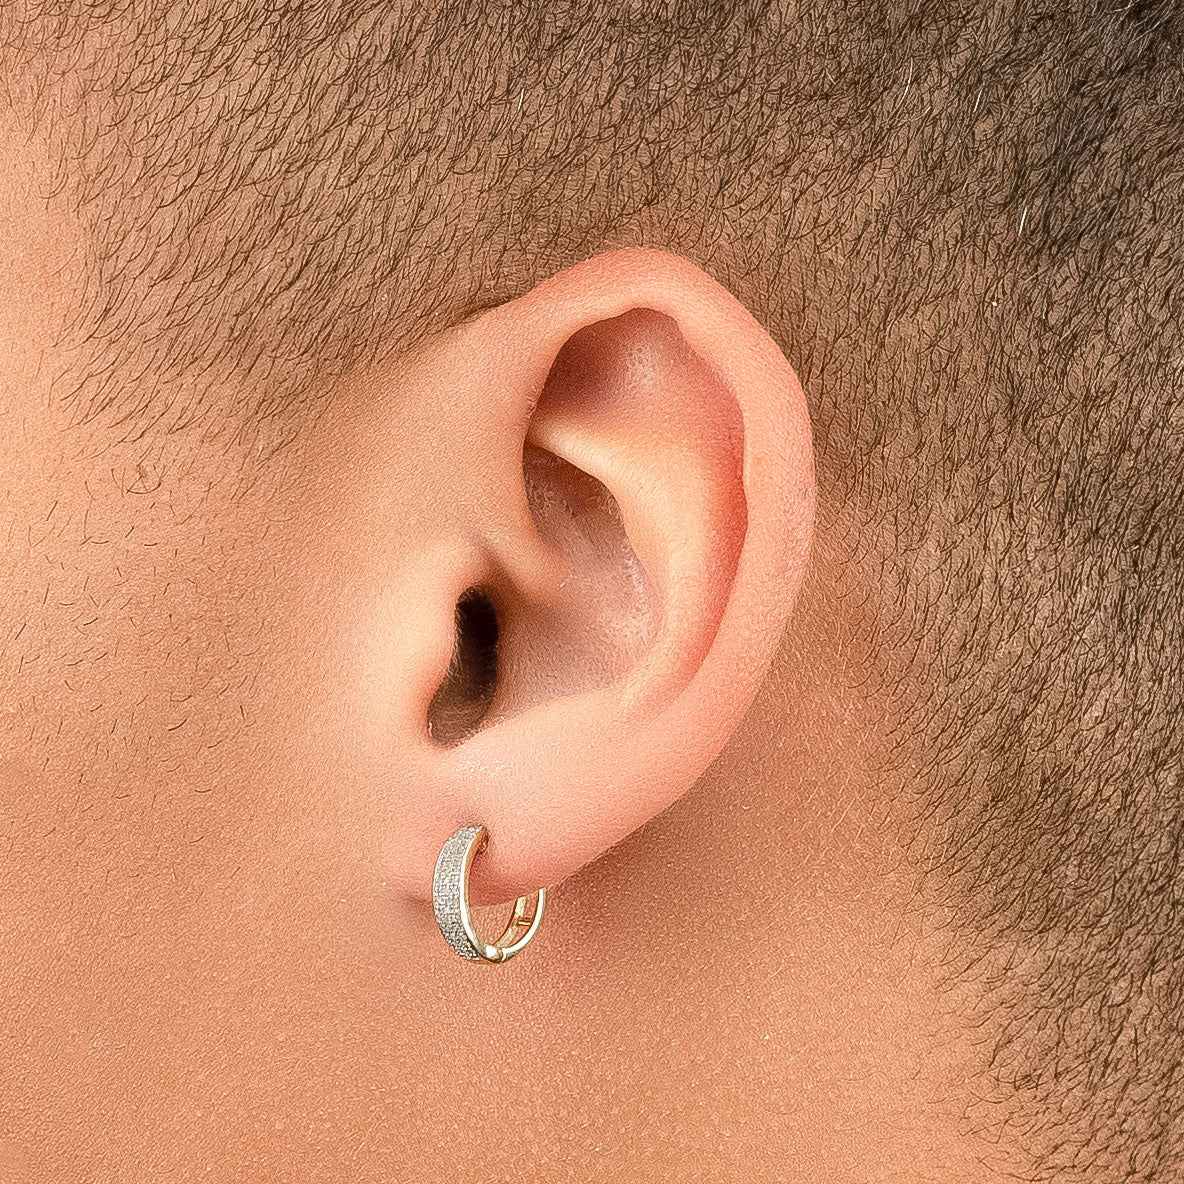 1PC Men Women Punk Round Titanium Stainless Steel Gold Ear Stud Earrings  Jewelry | eBay